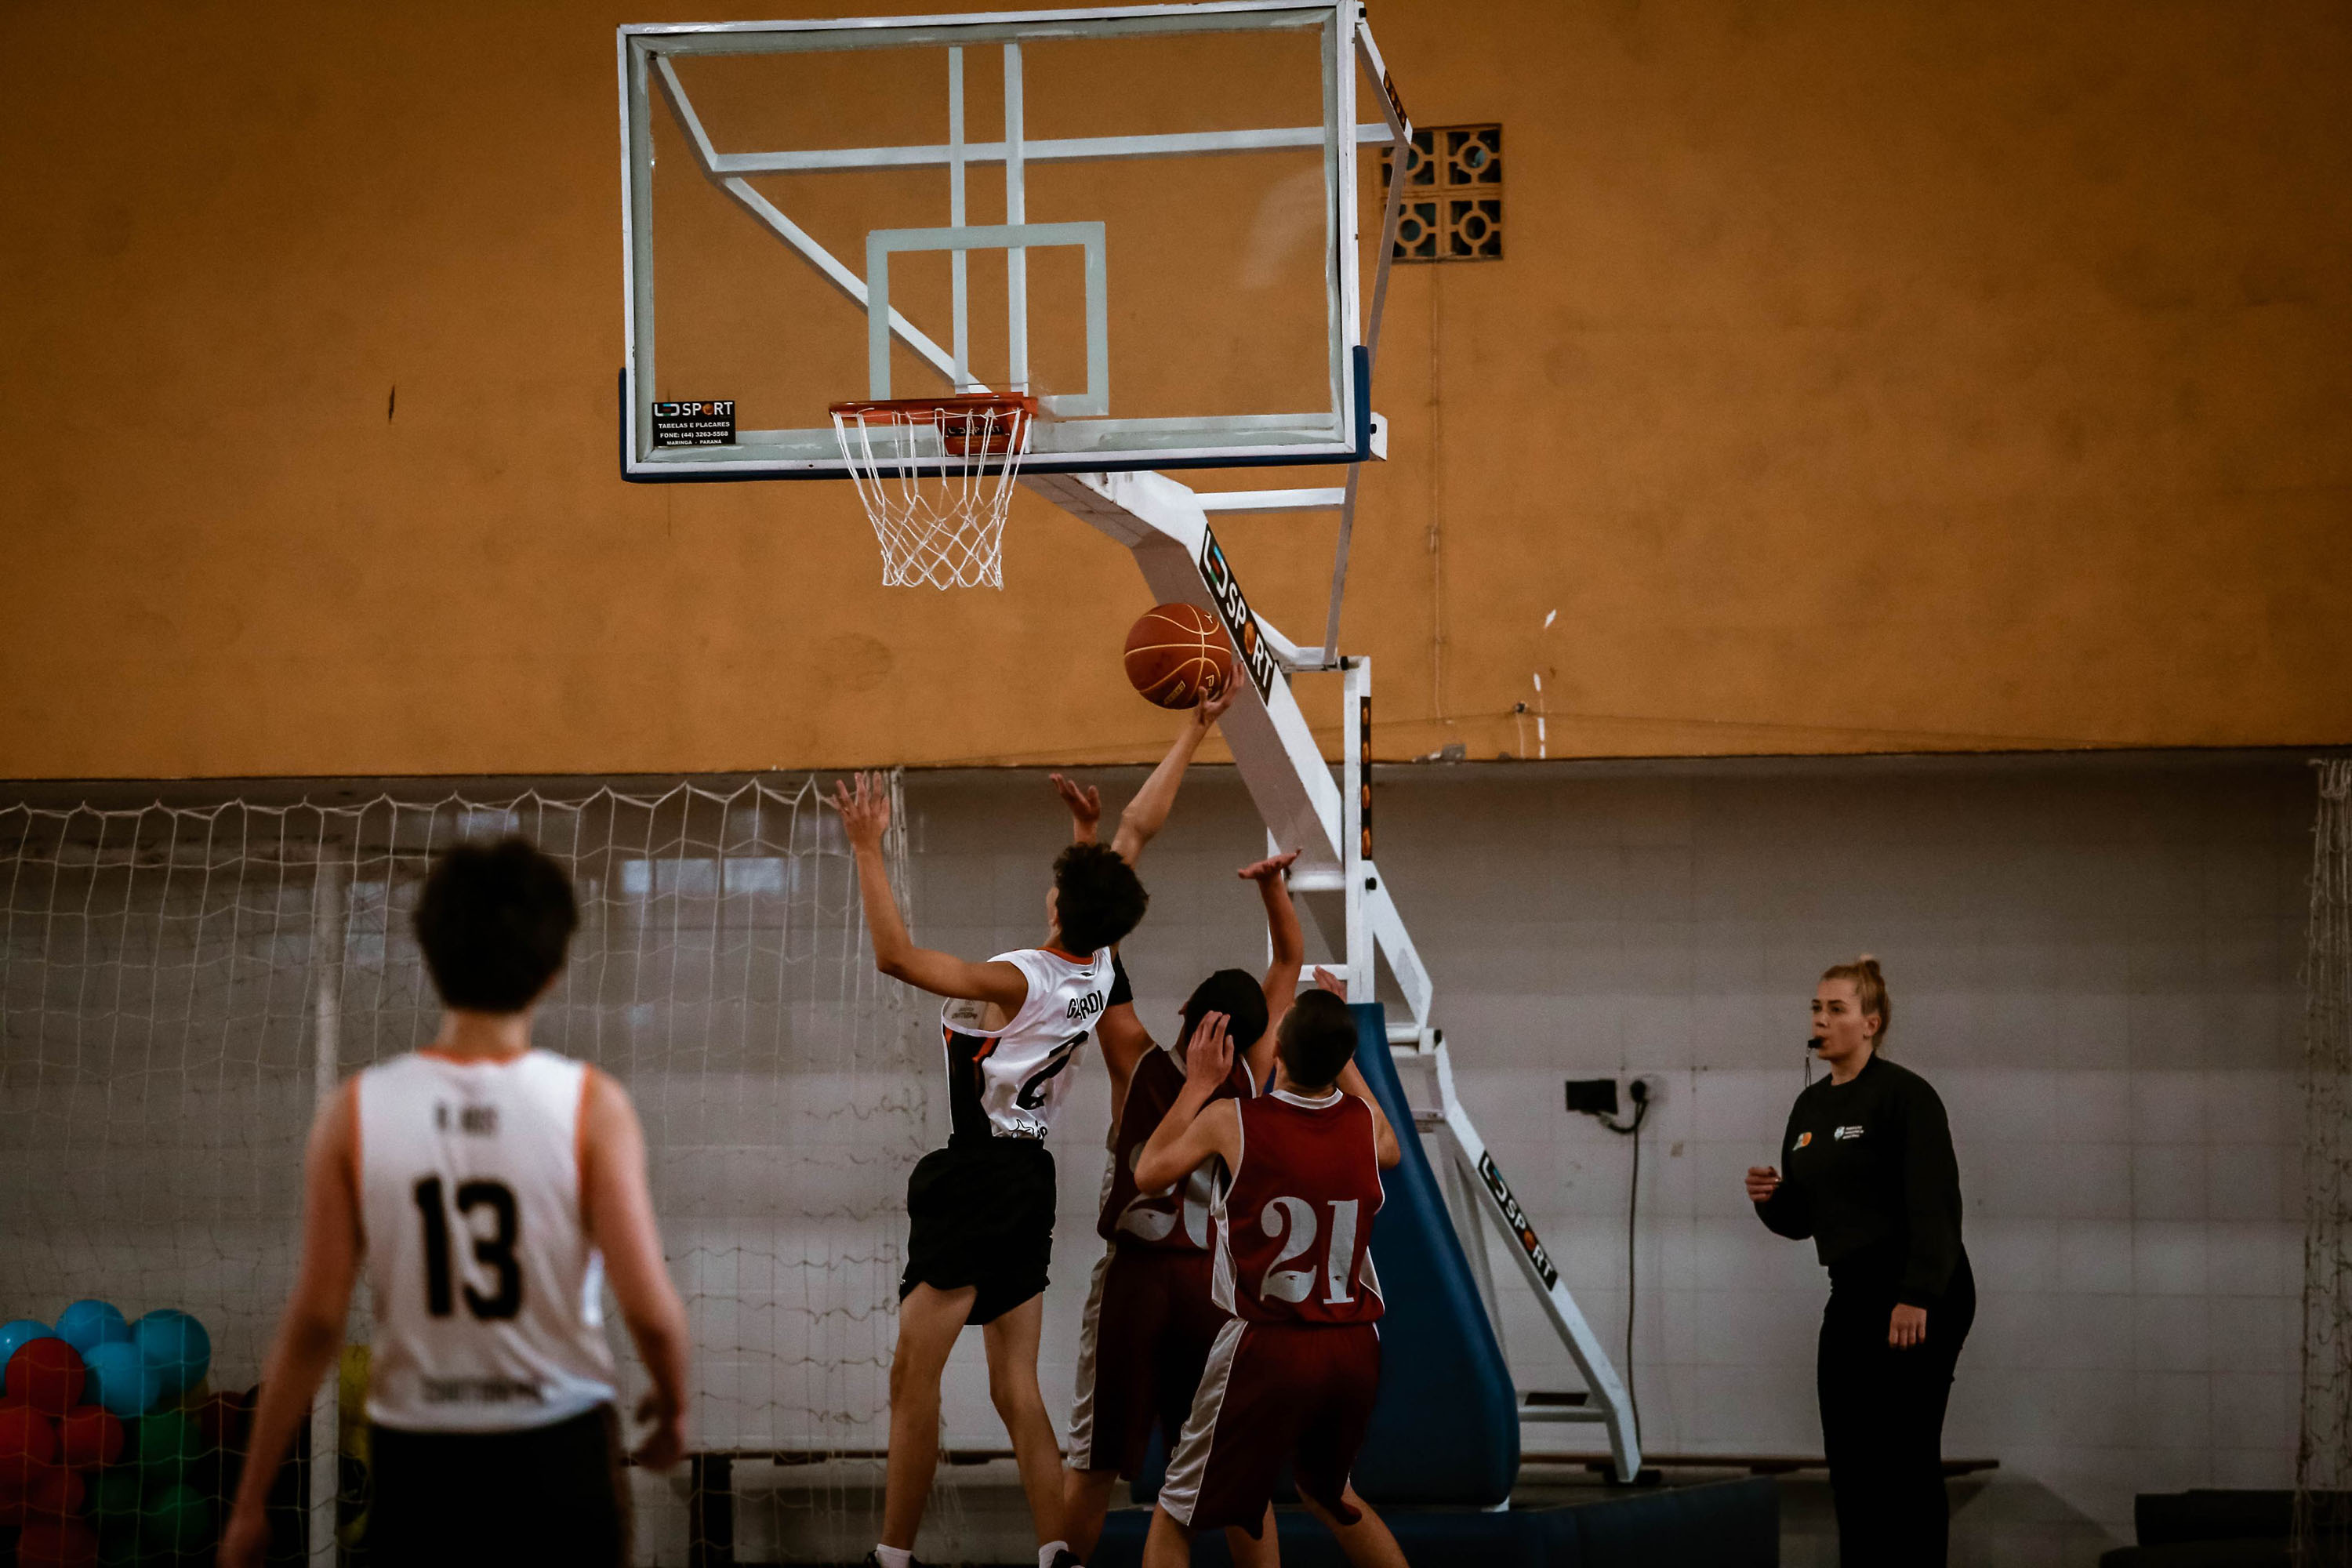 Vista de Iniciação e participação no basquetebol: ensino da fase